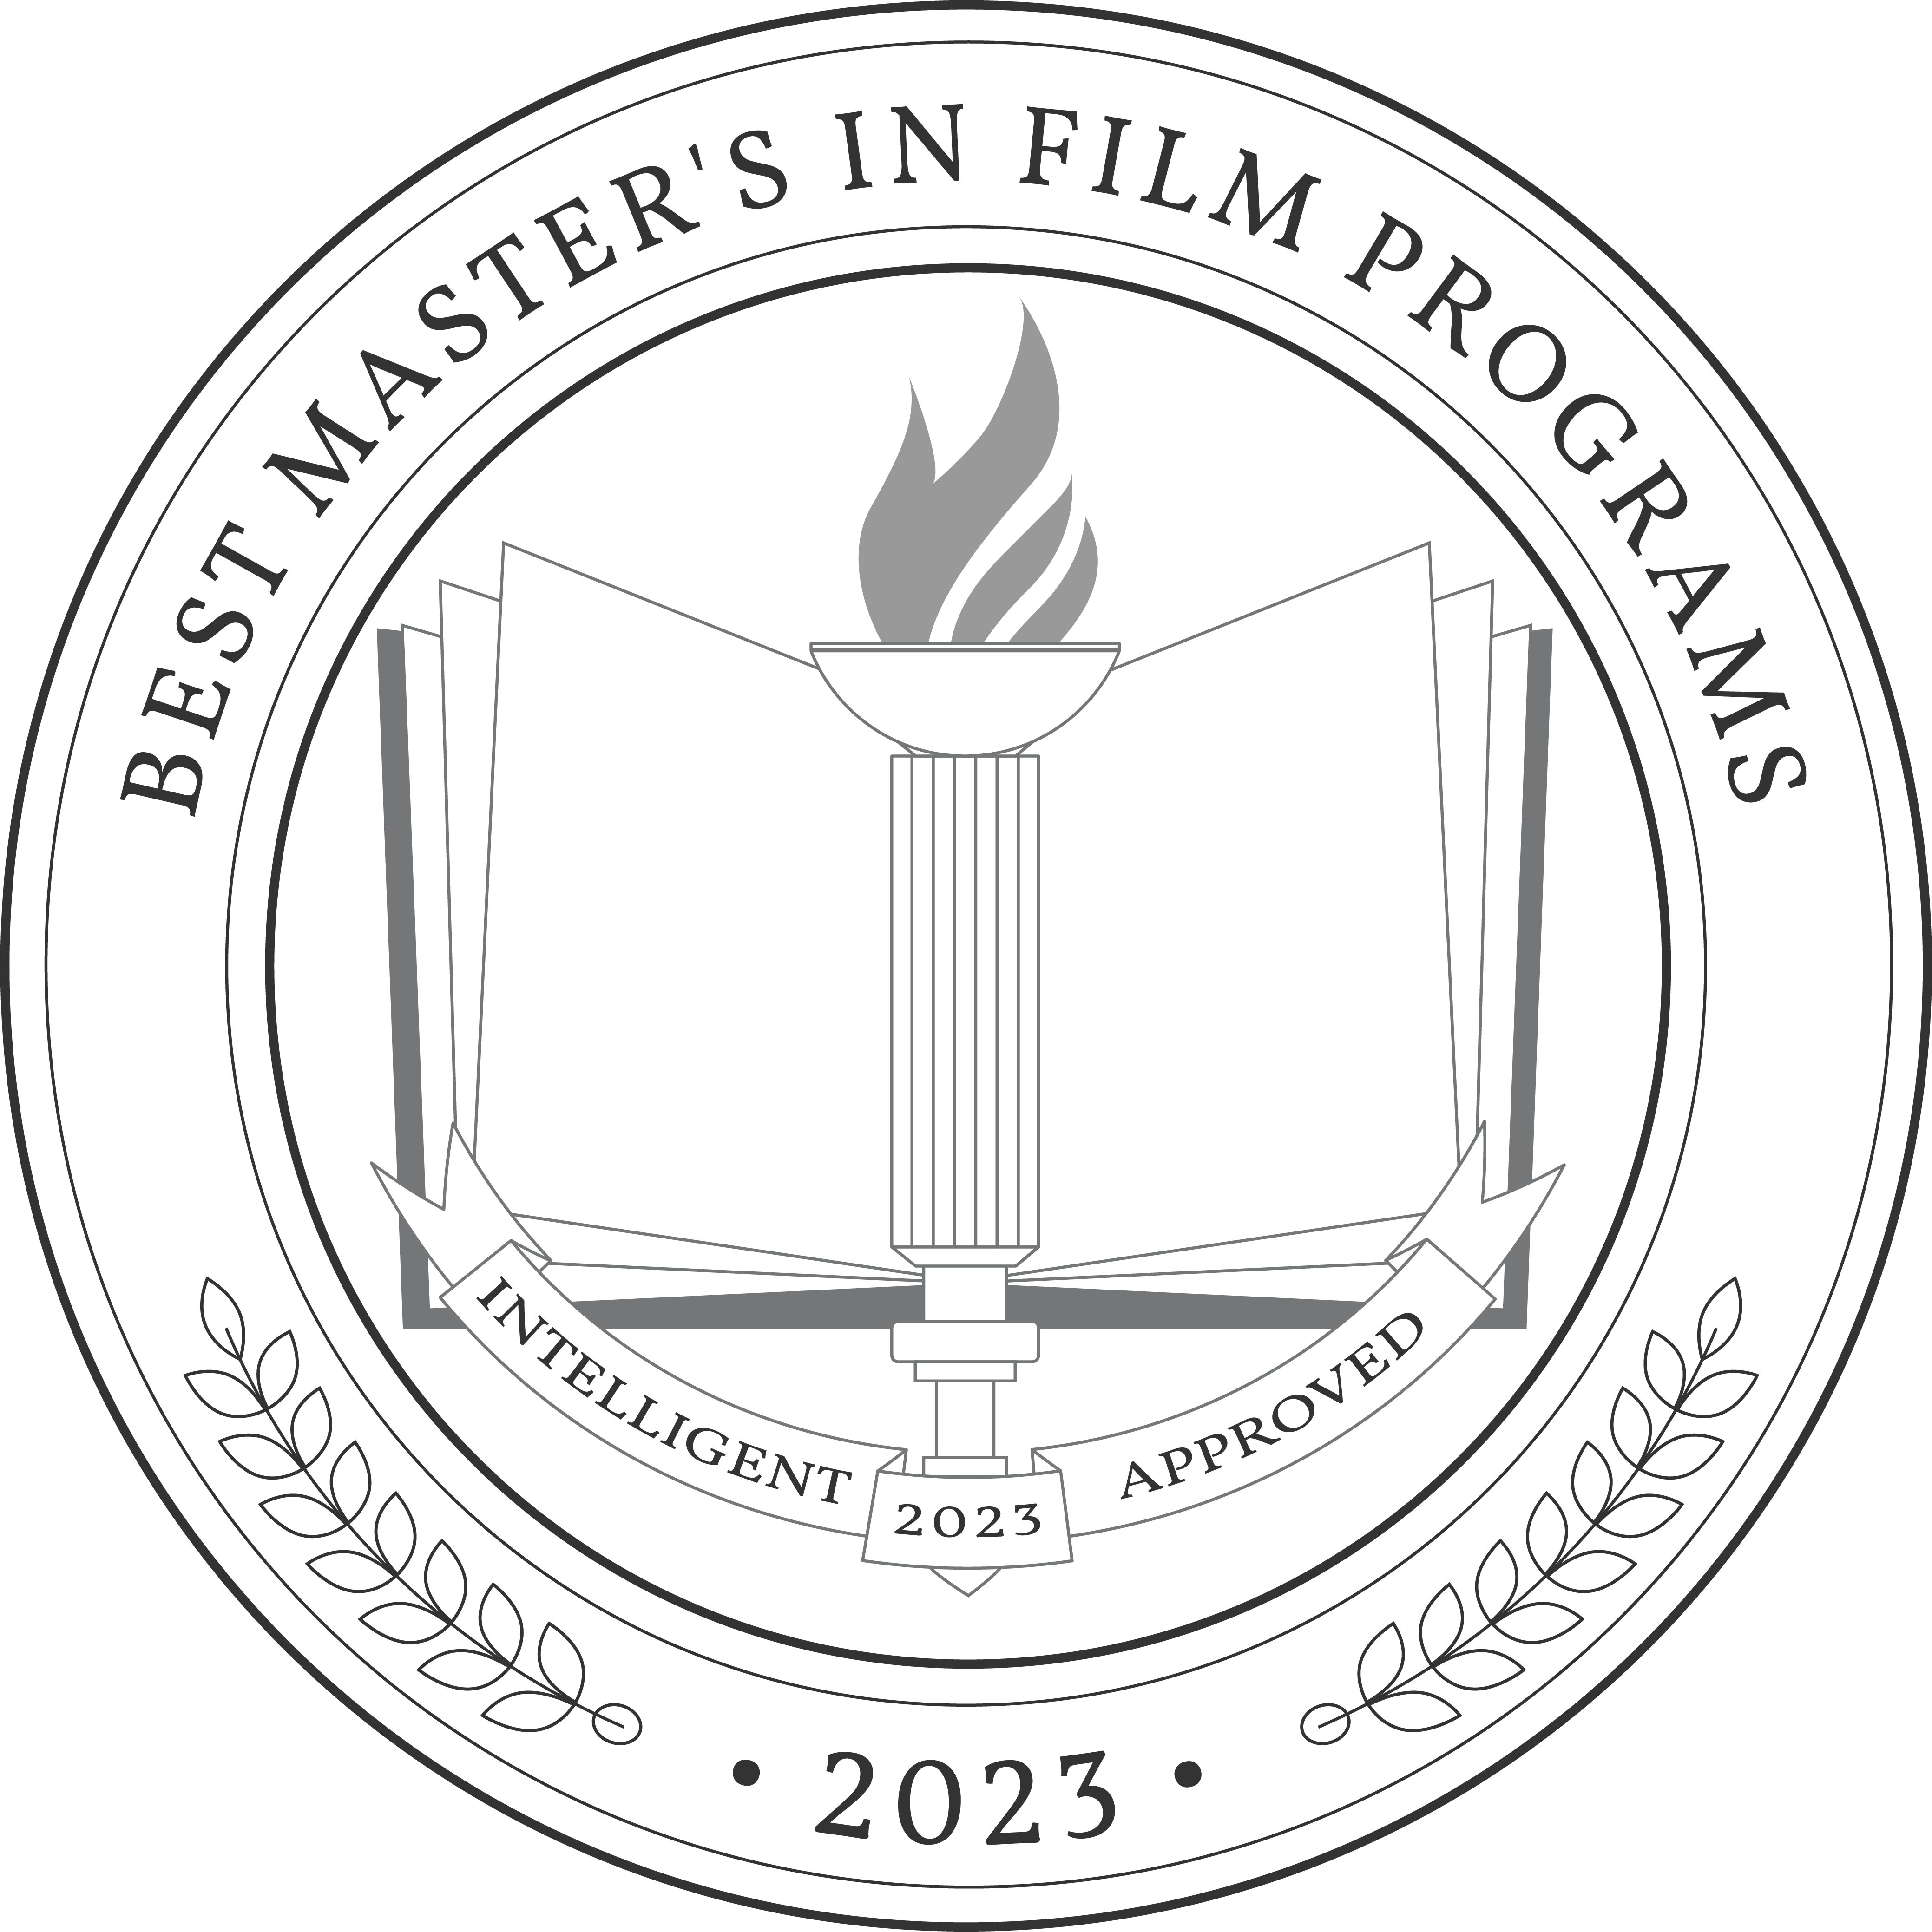 Best Master's in Film Programs badge